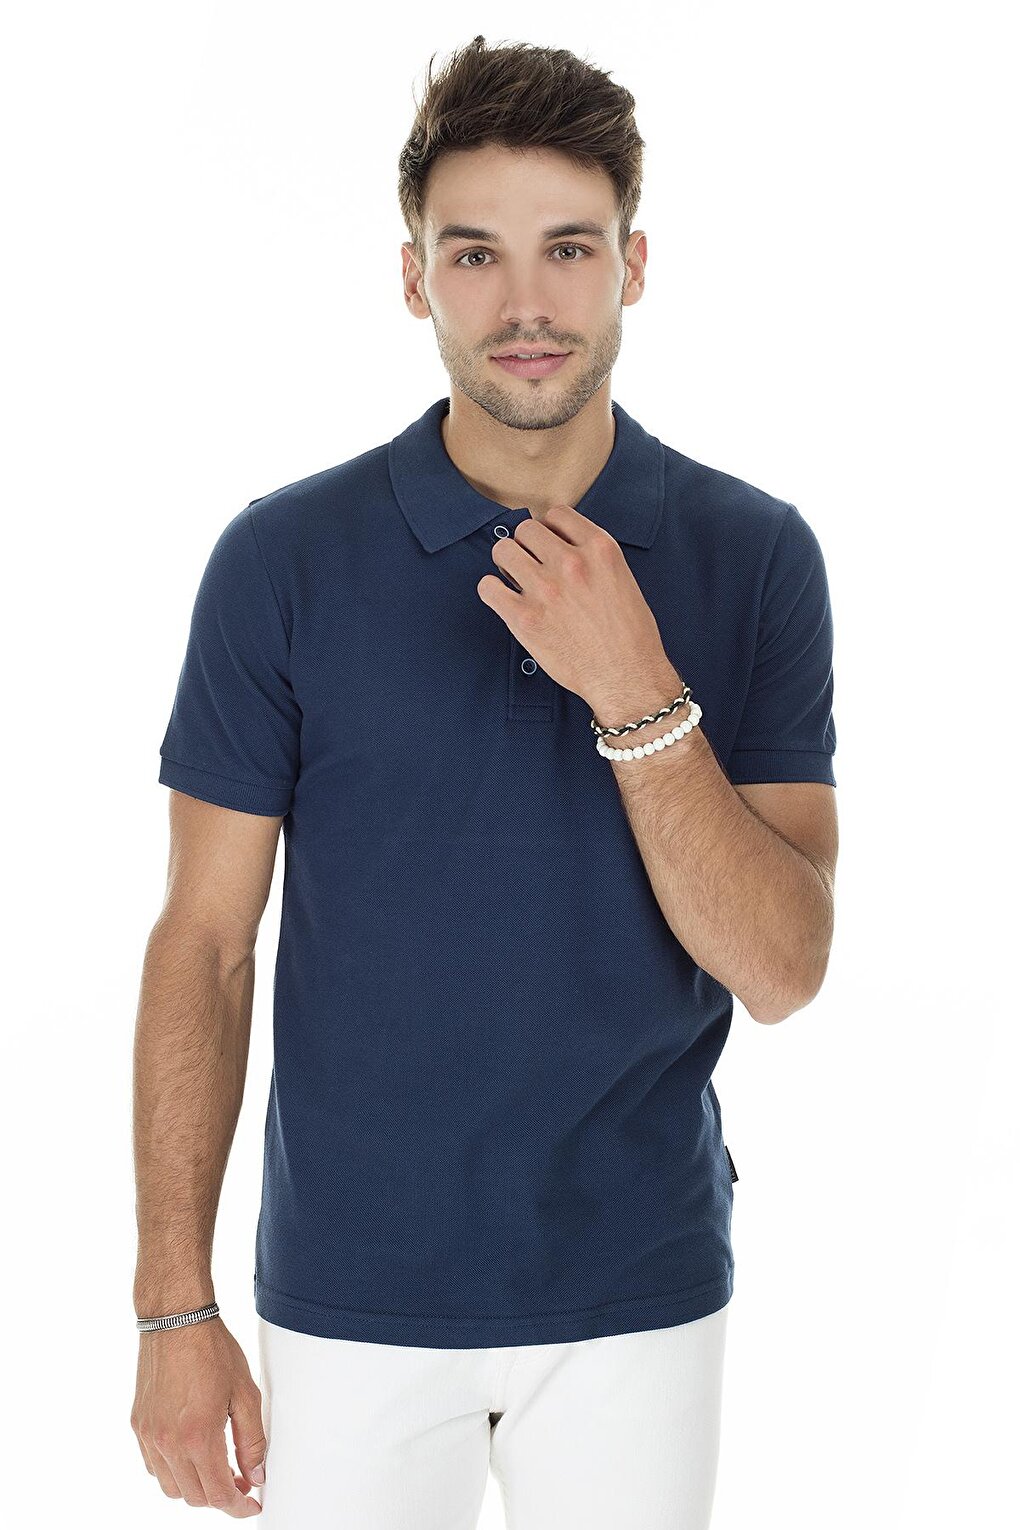 Хлопковая футболка-поло обычного кроя на пуговицах 4362050 Buratti, морская синева цена и фото